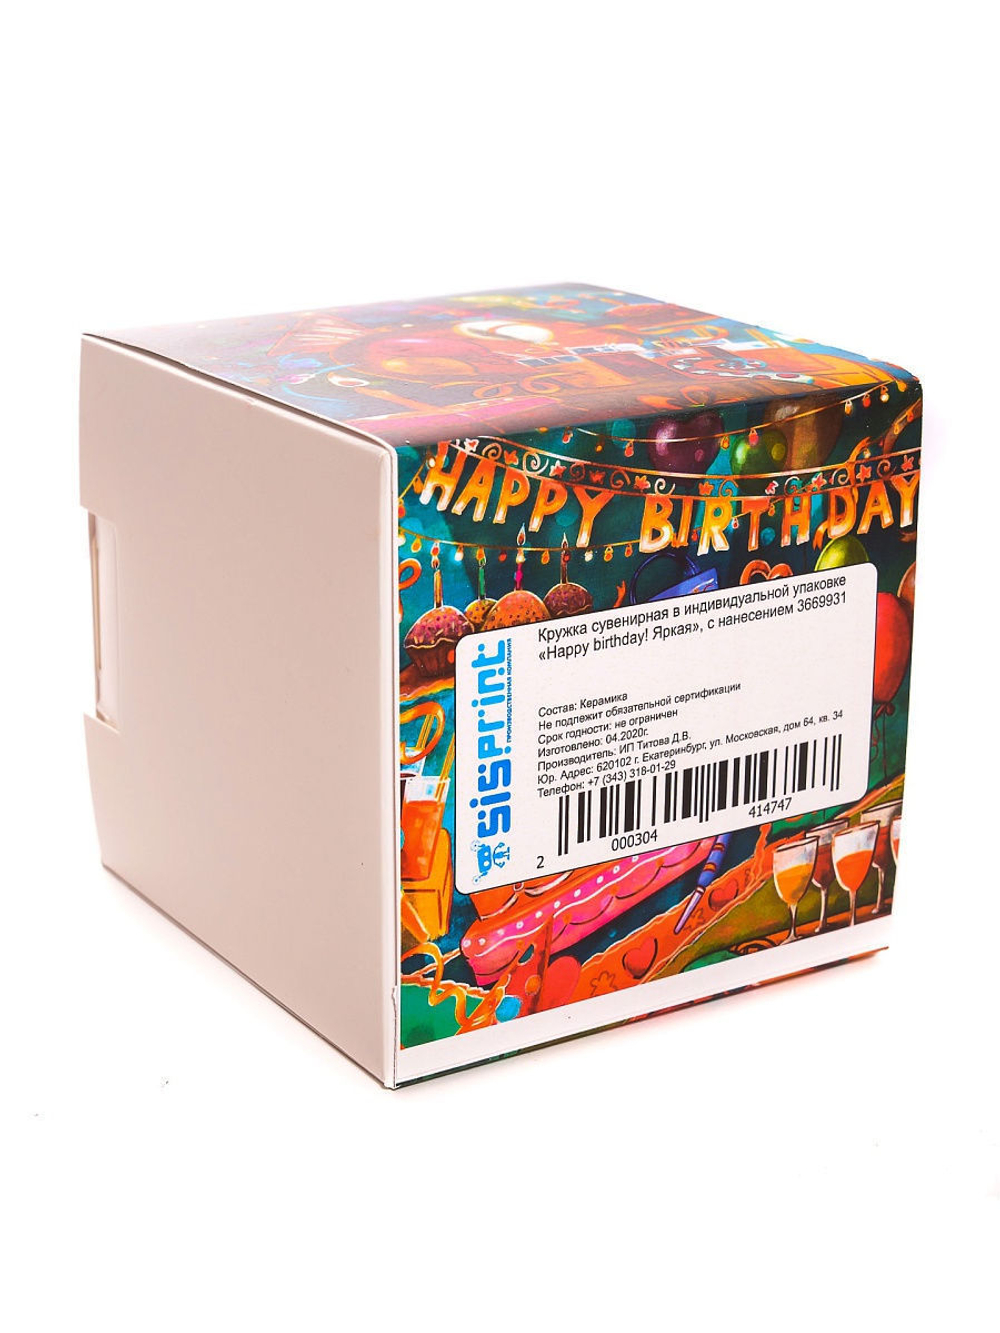 Кружка подарок сувенир на день рождения "Happy birthday! Яркая", с нанесением 3669931